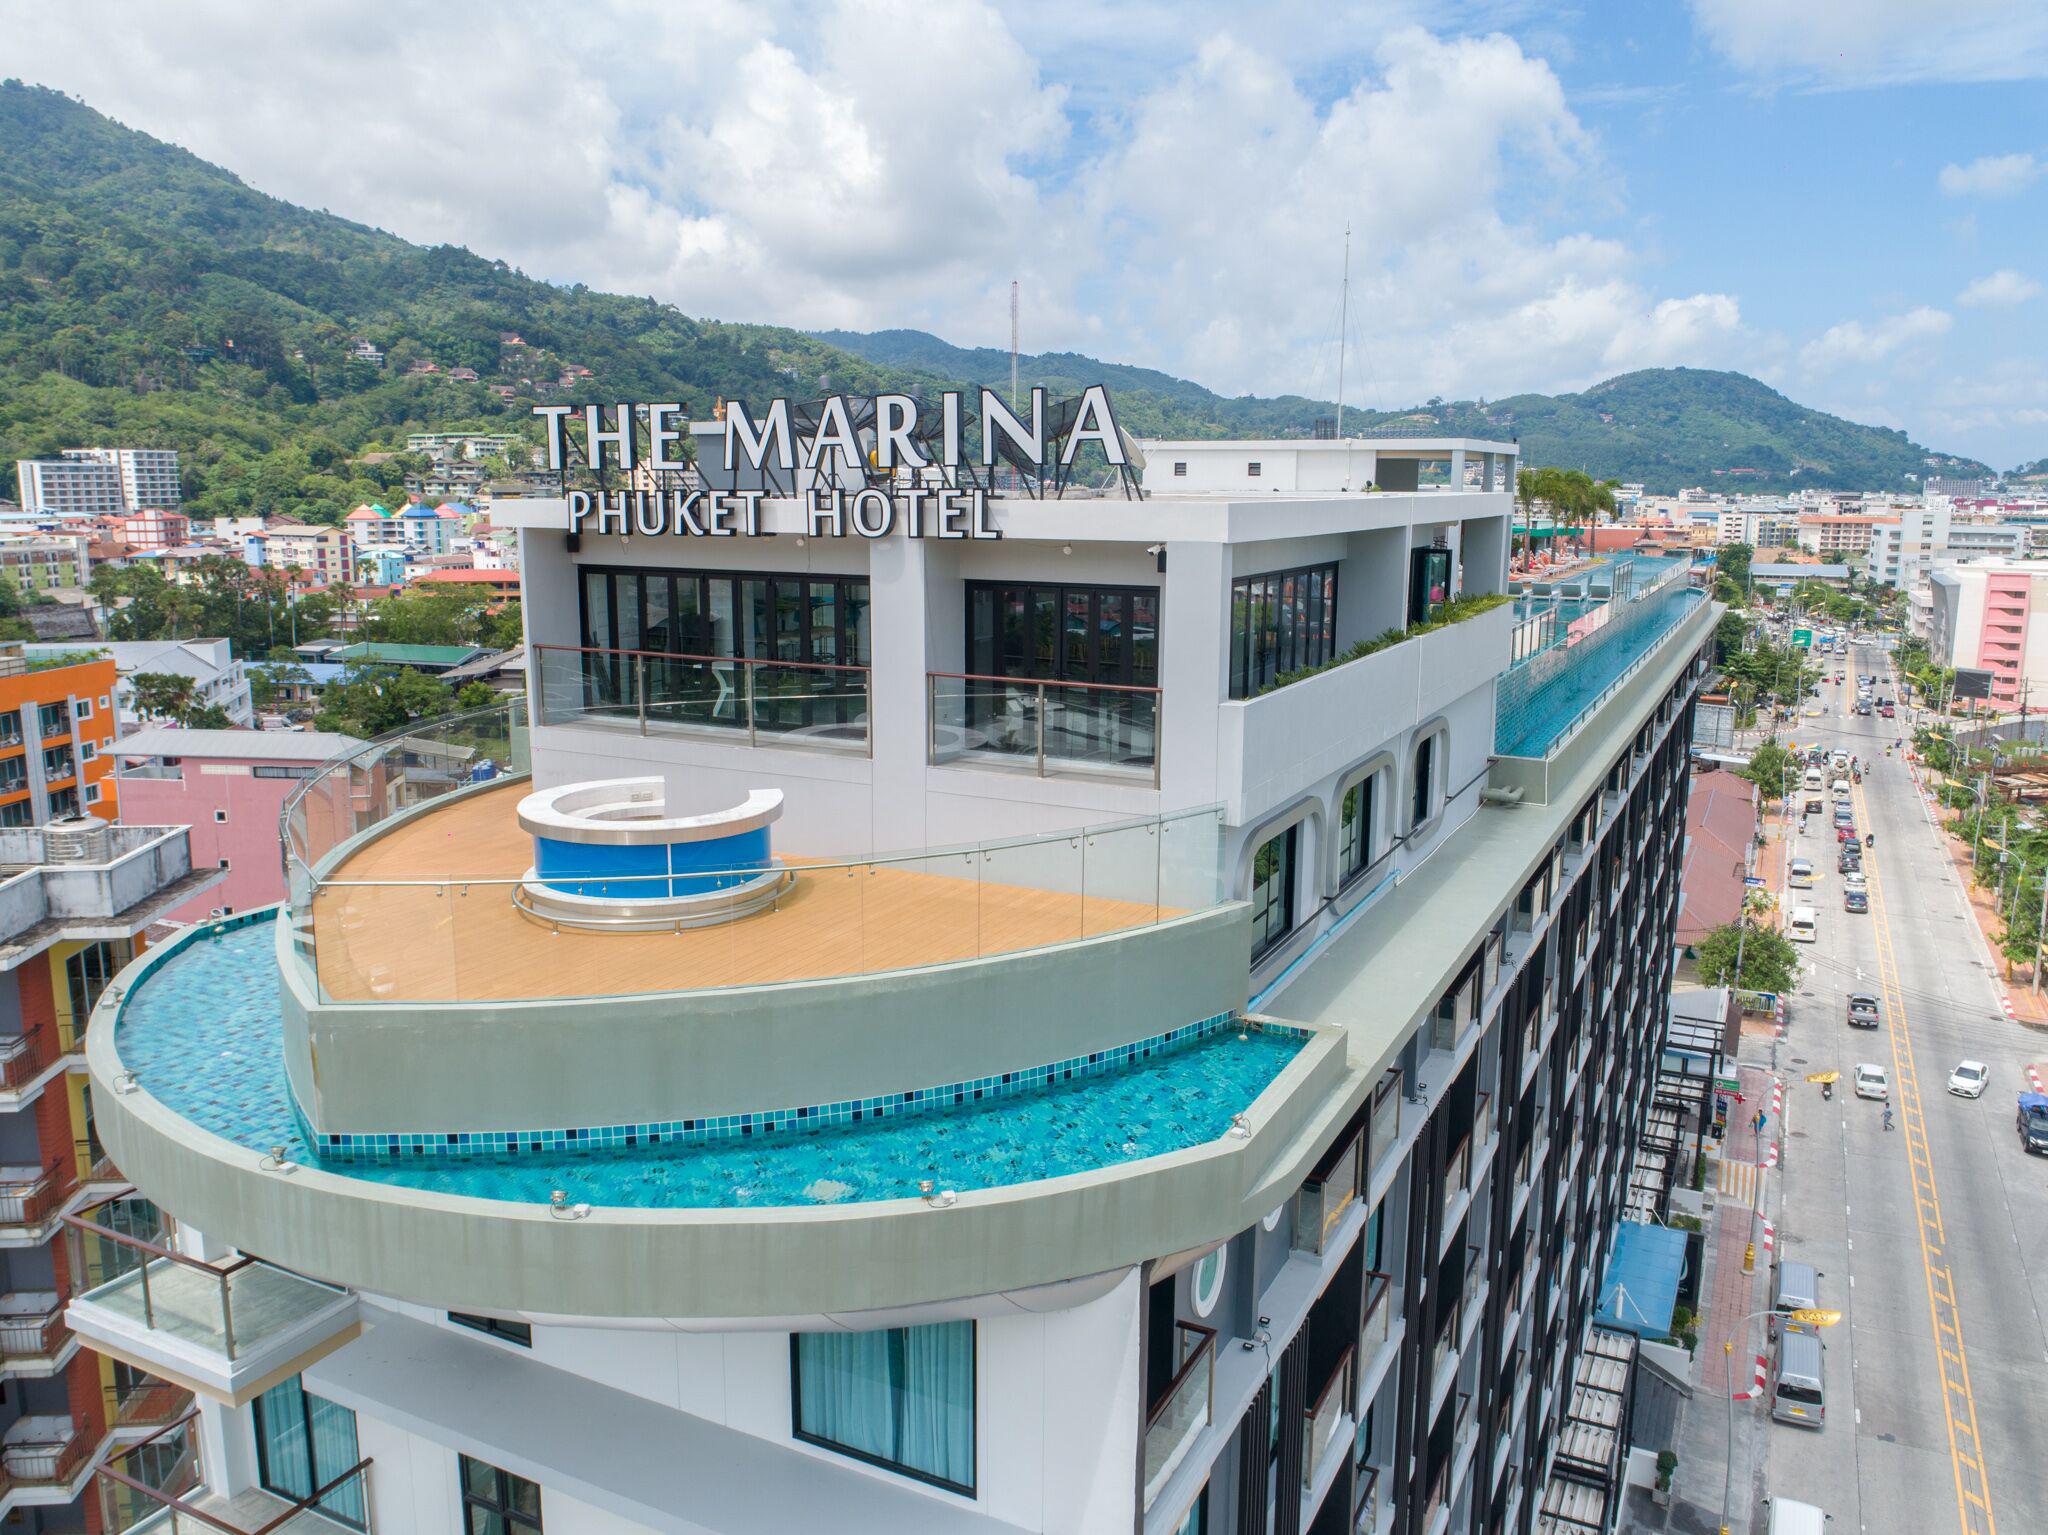 The Marina Phuket Hotel image